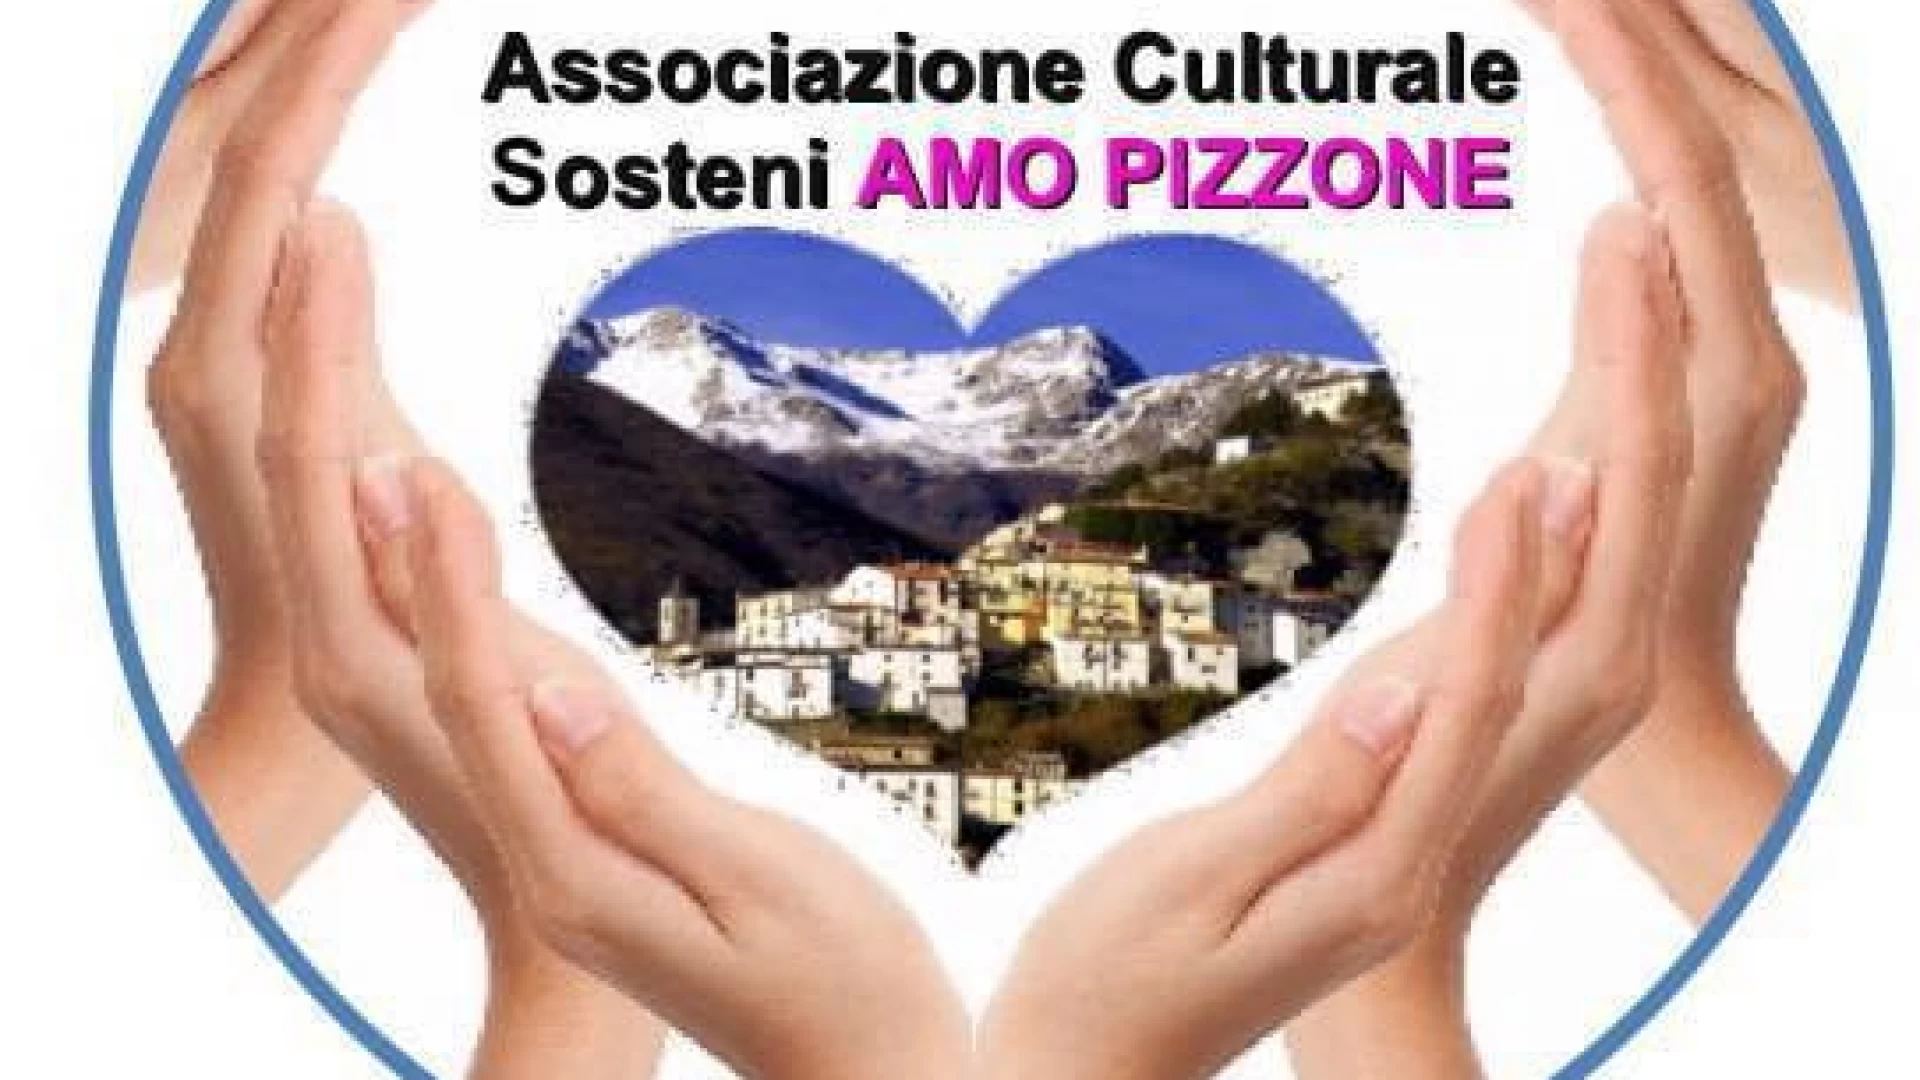 Pizzone: l’Associazione Culturale “Sosteniamo Pizzone” dona uova di Pasqua ai più piccoli.